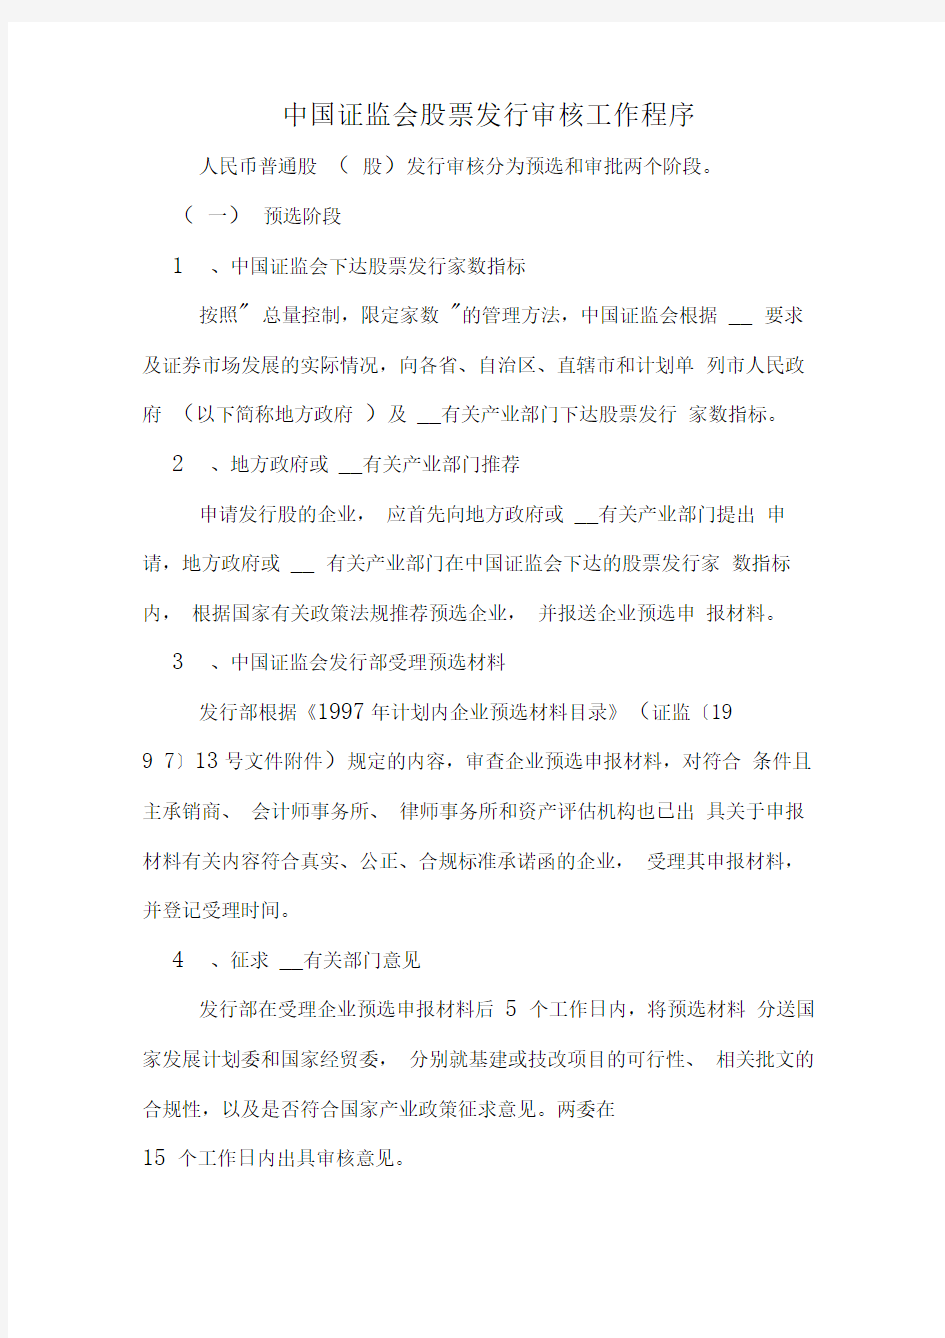 中国证监会股票发行审核工作程序